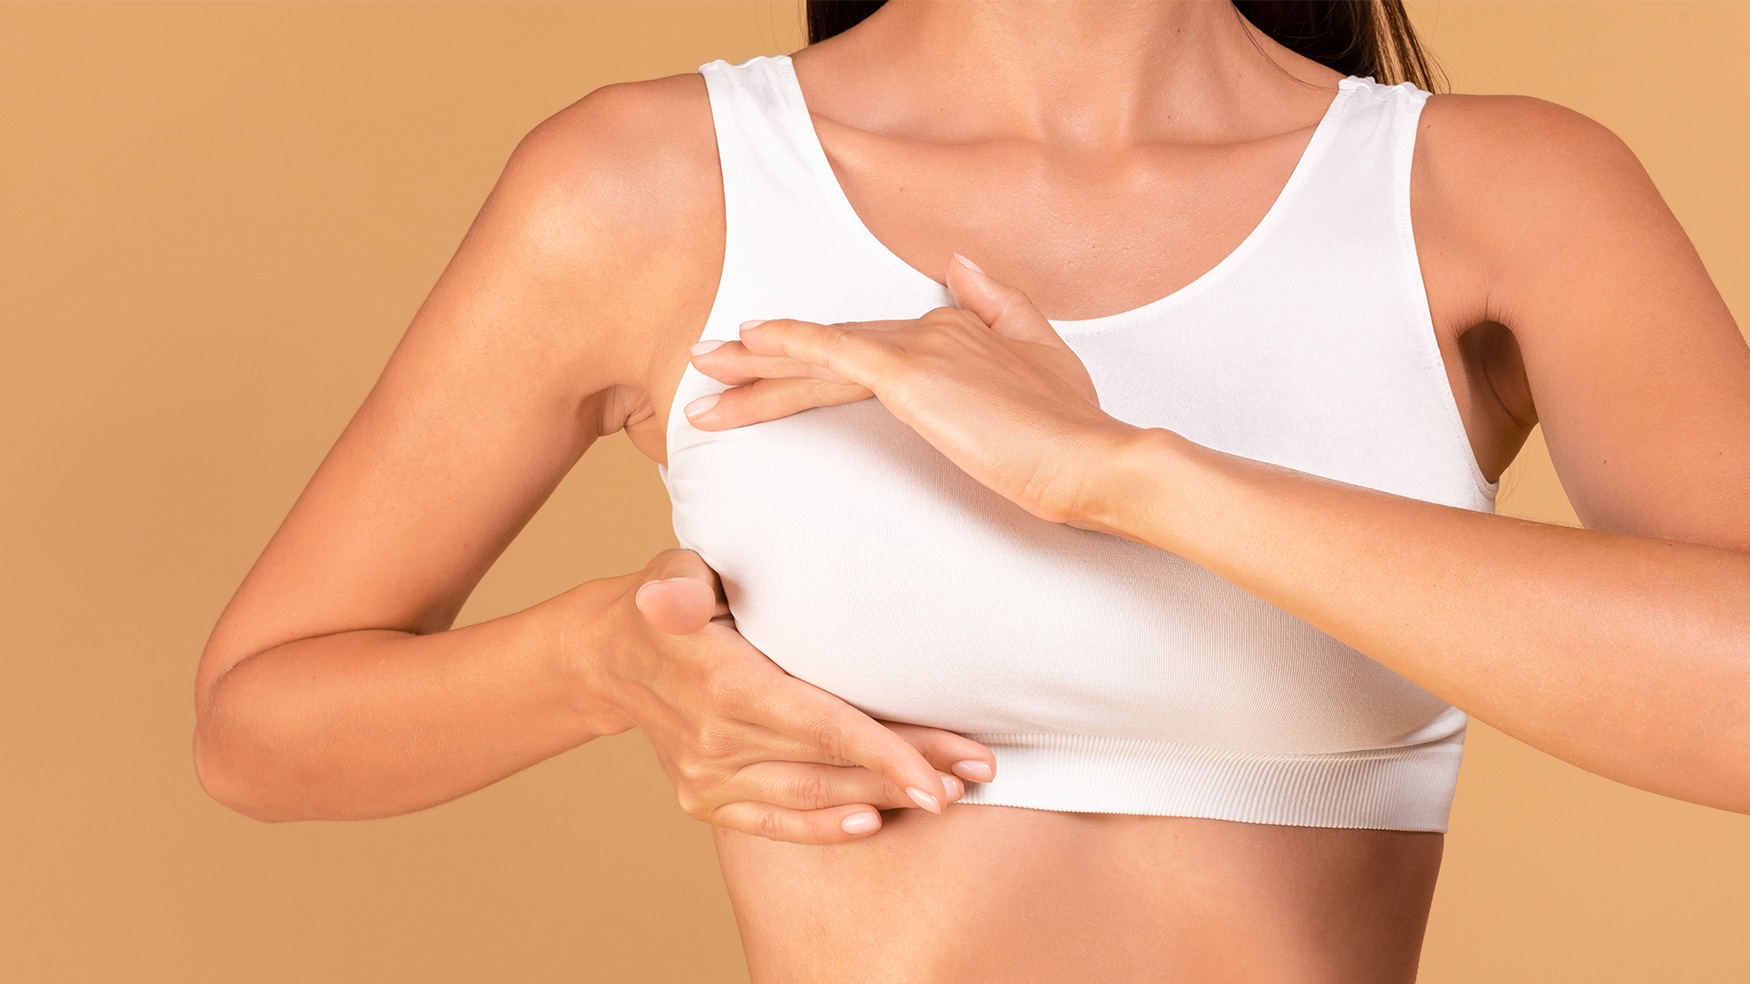 Reducción mamaria: indicaciones y beneficios para considerar esta cirugía